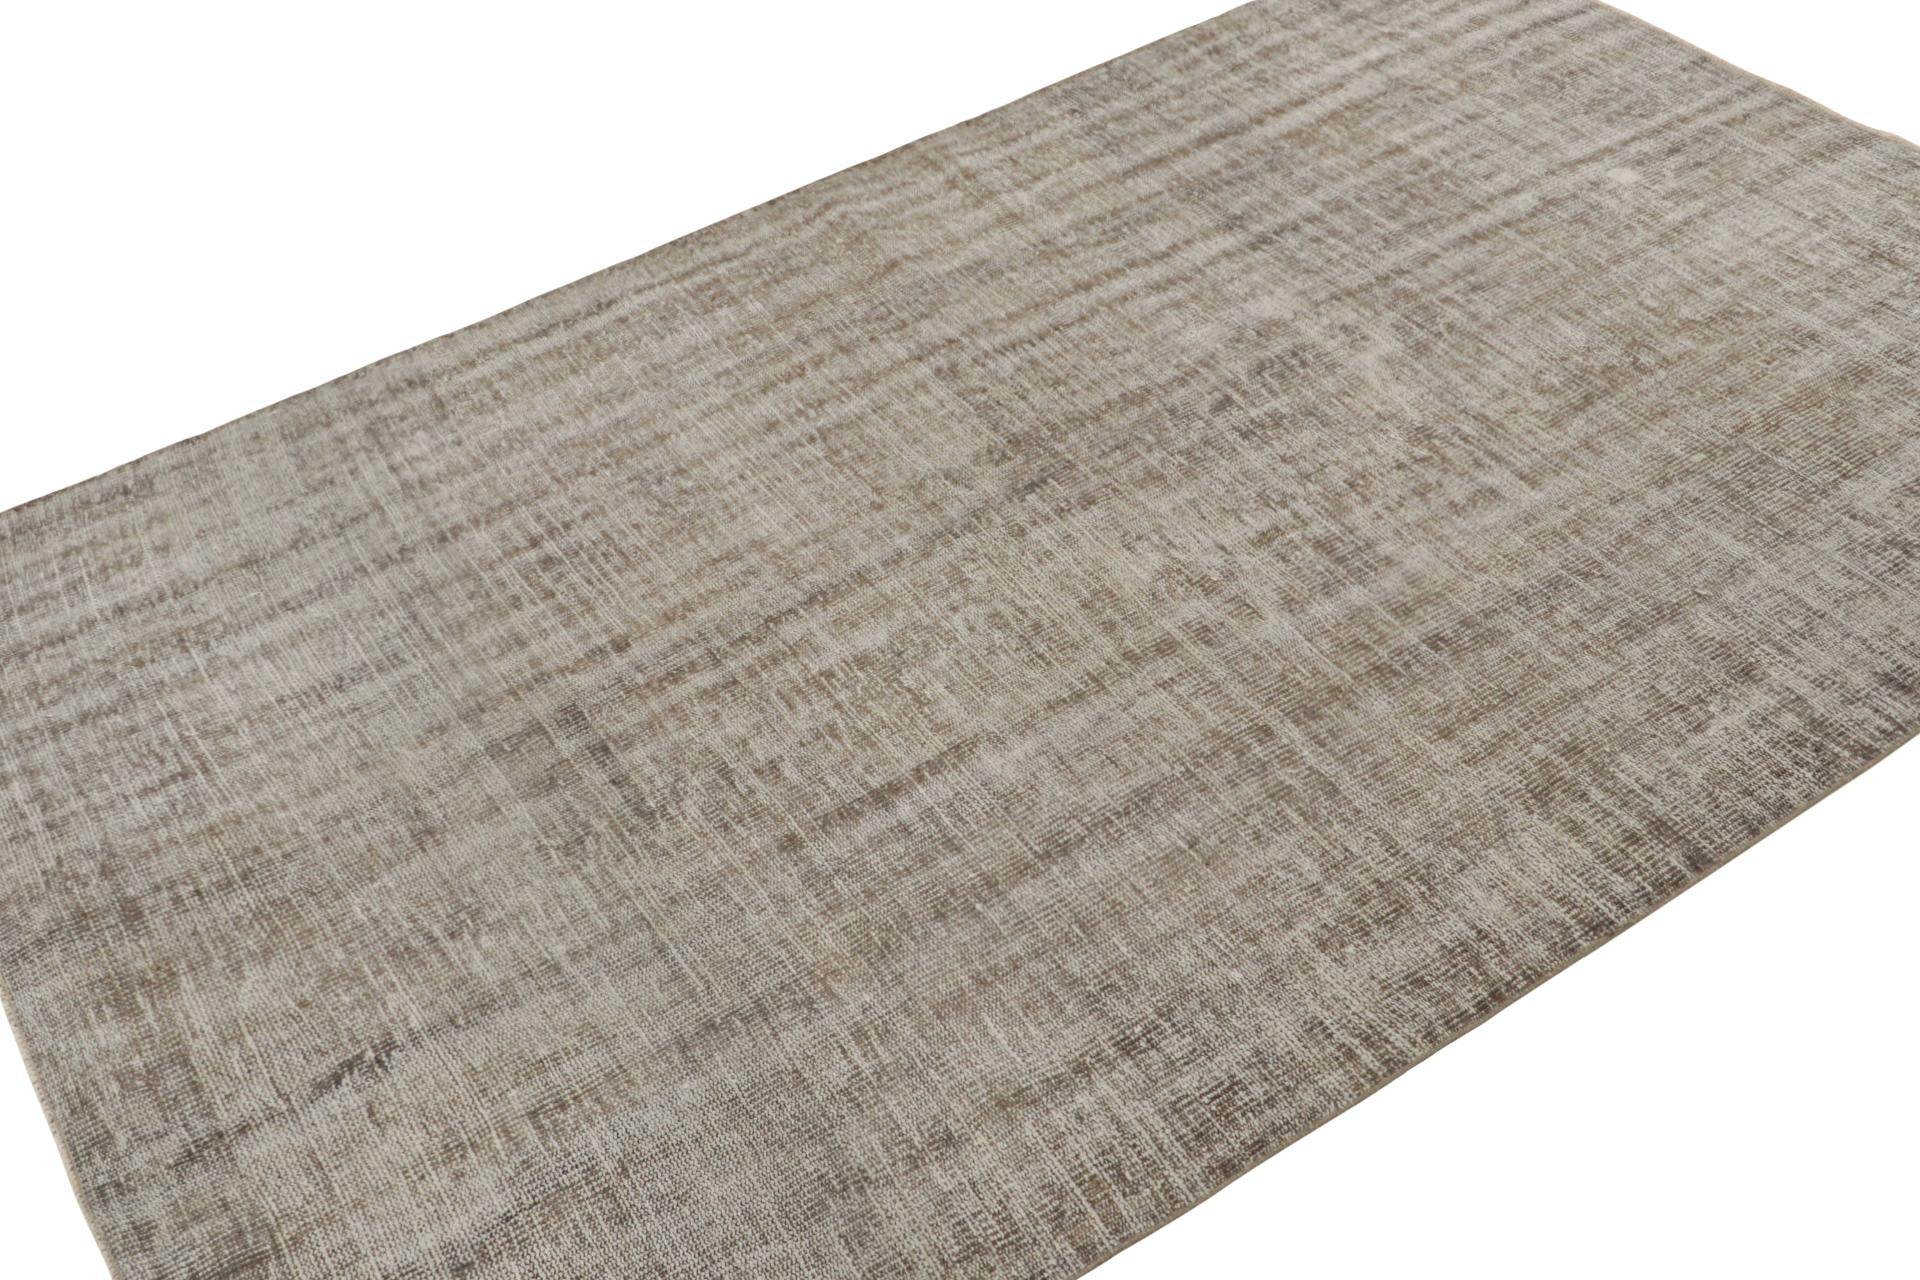 Ce tapis vintage 6x9, noué à la main en laine, circa 1960-1970,  est une pièce discrète, presque unie s'il n'y avait pas l'accent de texture et l'élément de rayures ton sur ton qui confère à ce jeu de tons beige-brun et gris.  

Sur le Design :